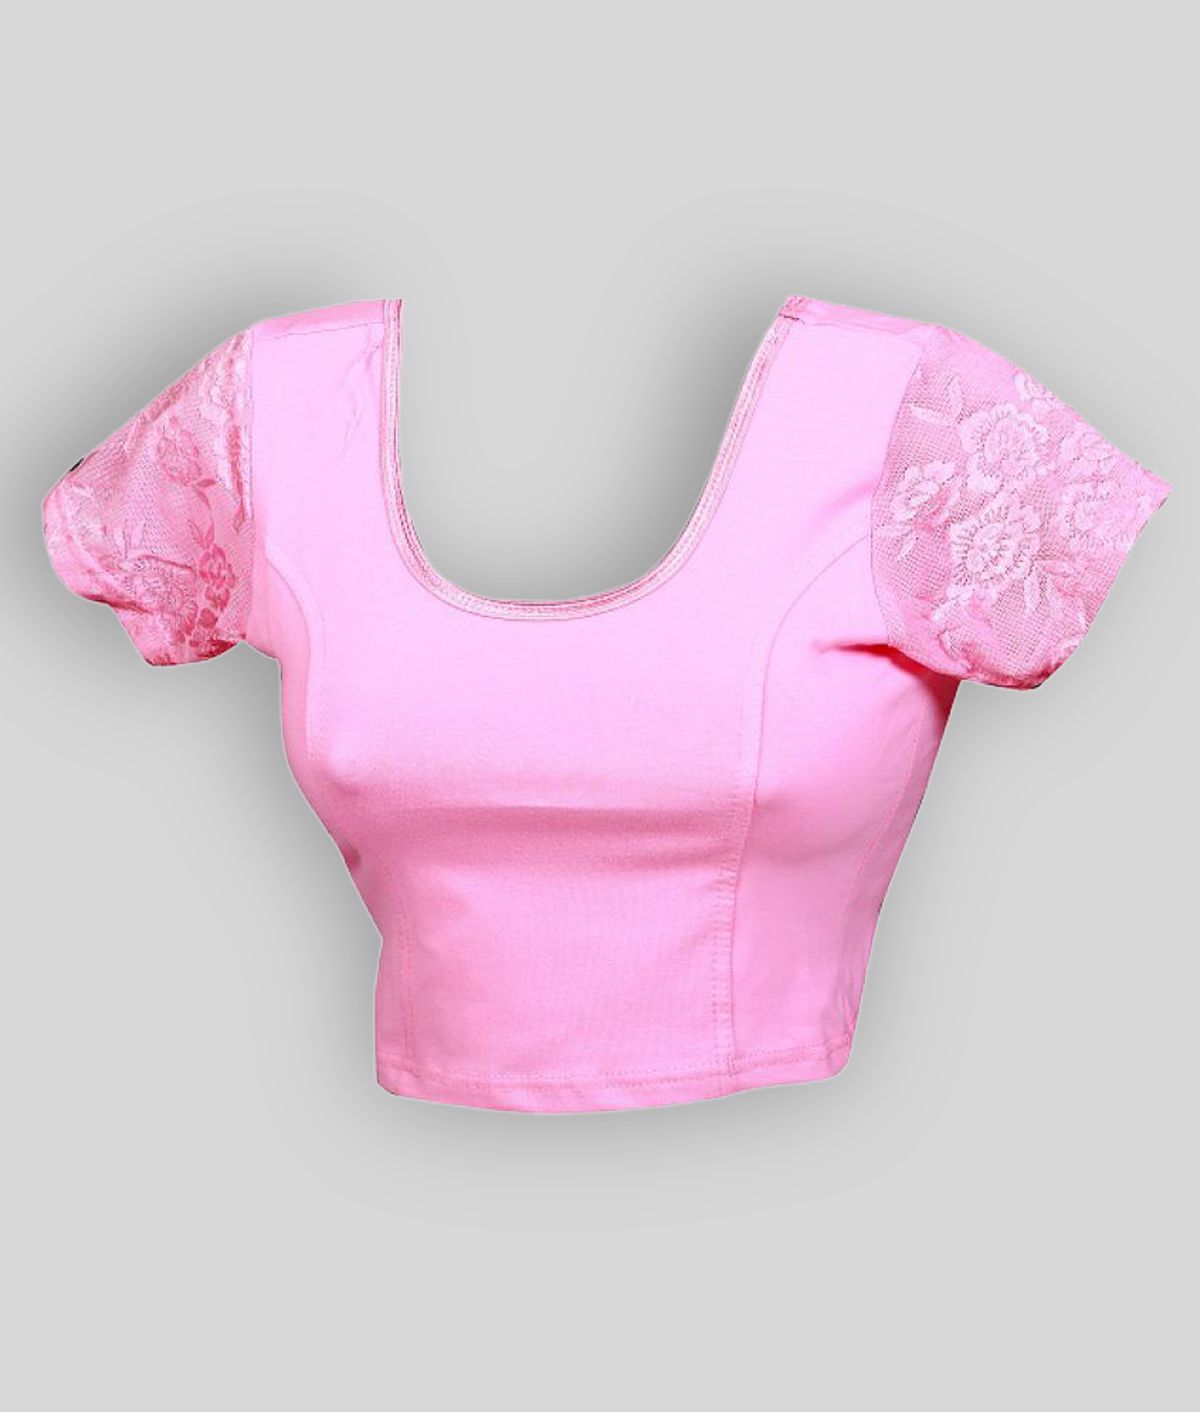 HIMALAYA FASHION - Pink Lycra Women's Blouse ( Pack of 1 )